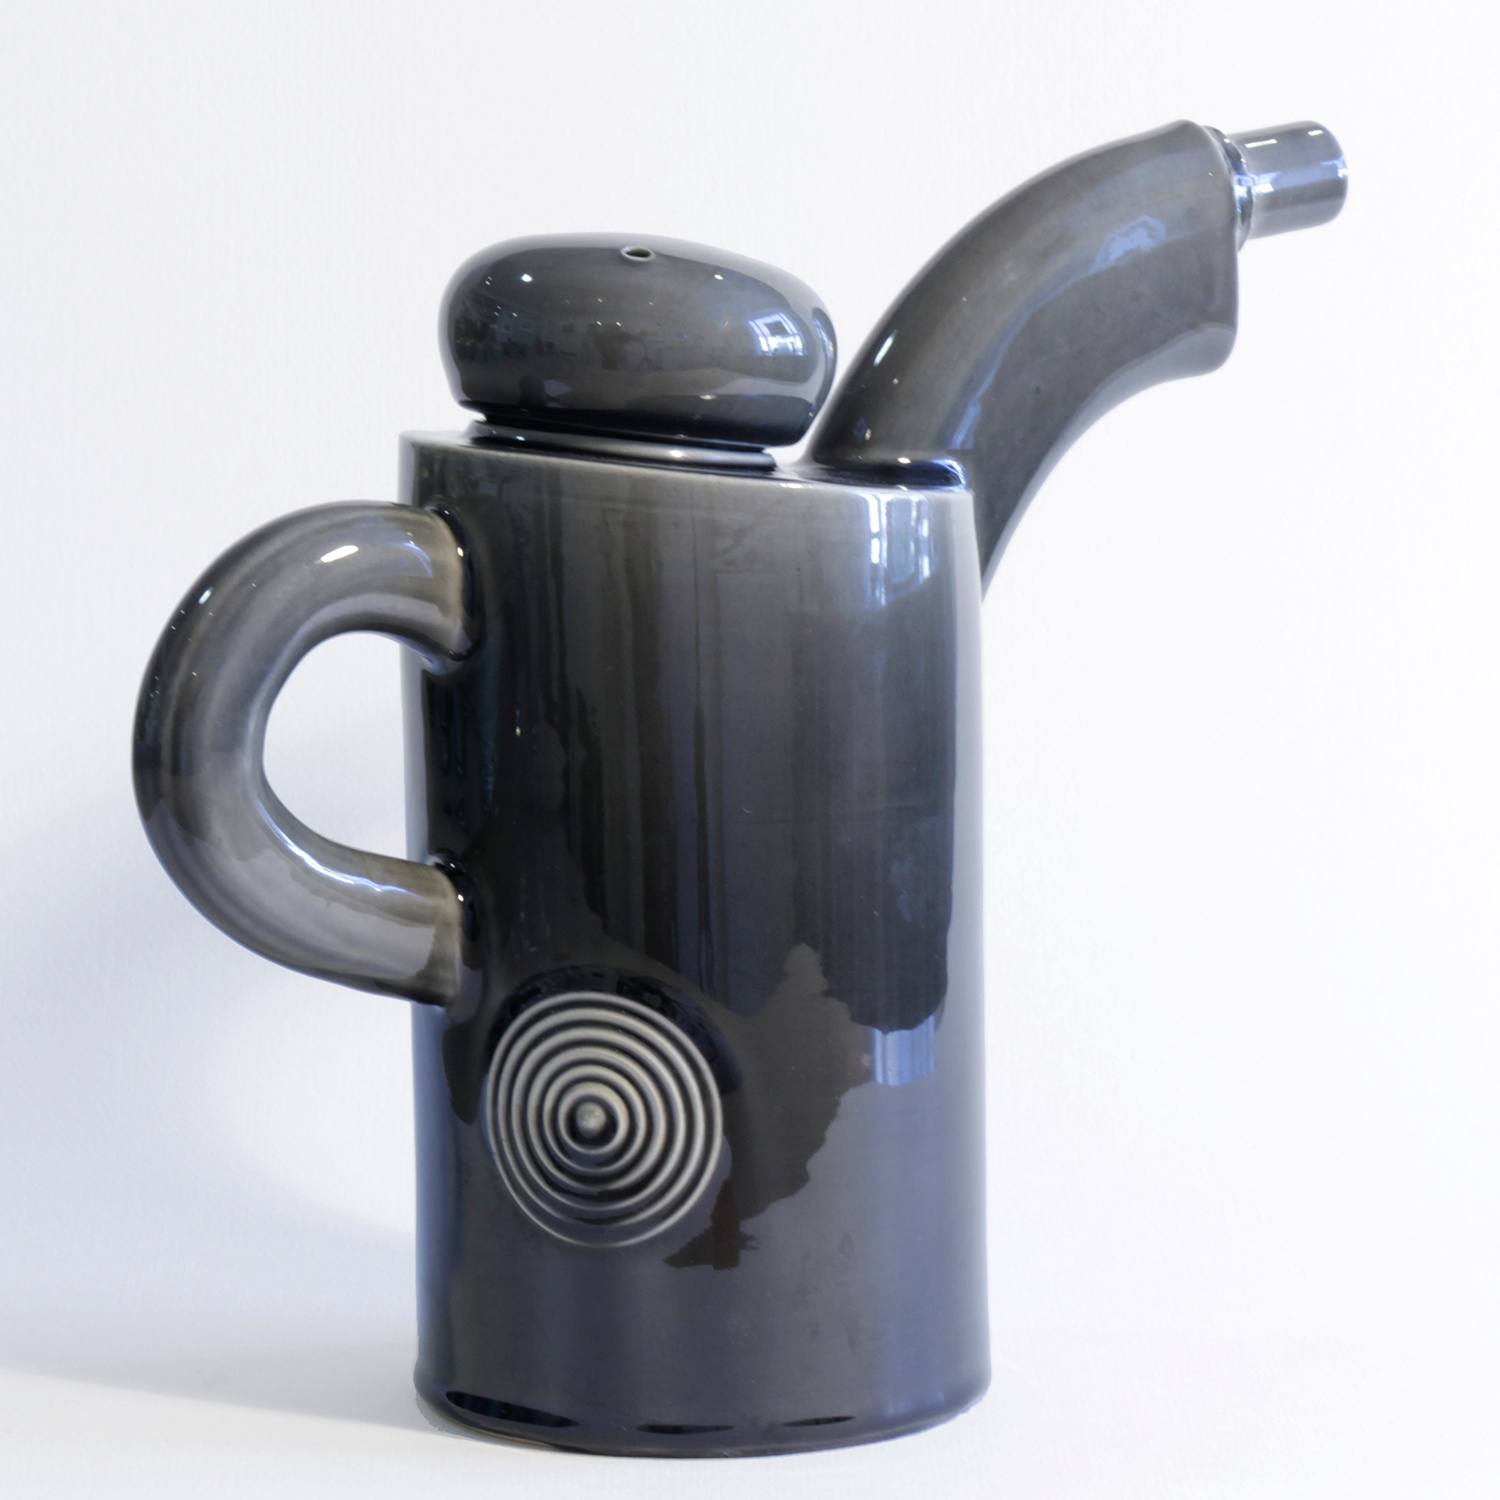 Inkwash Teapot by Walter Keeler